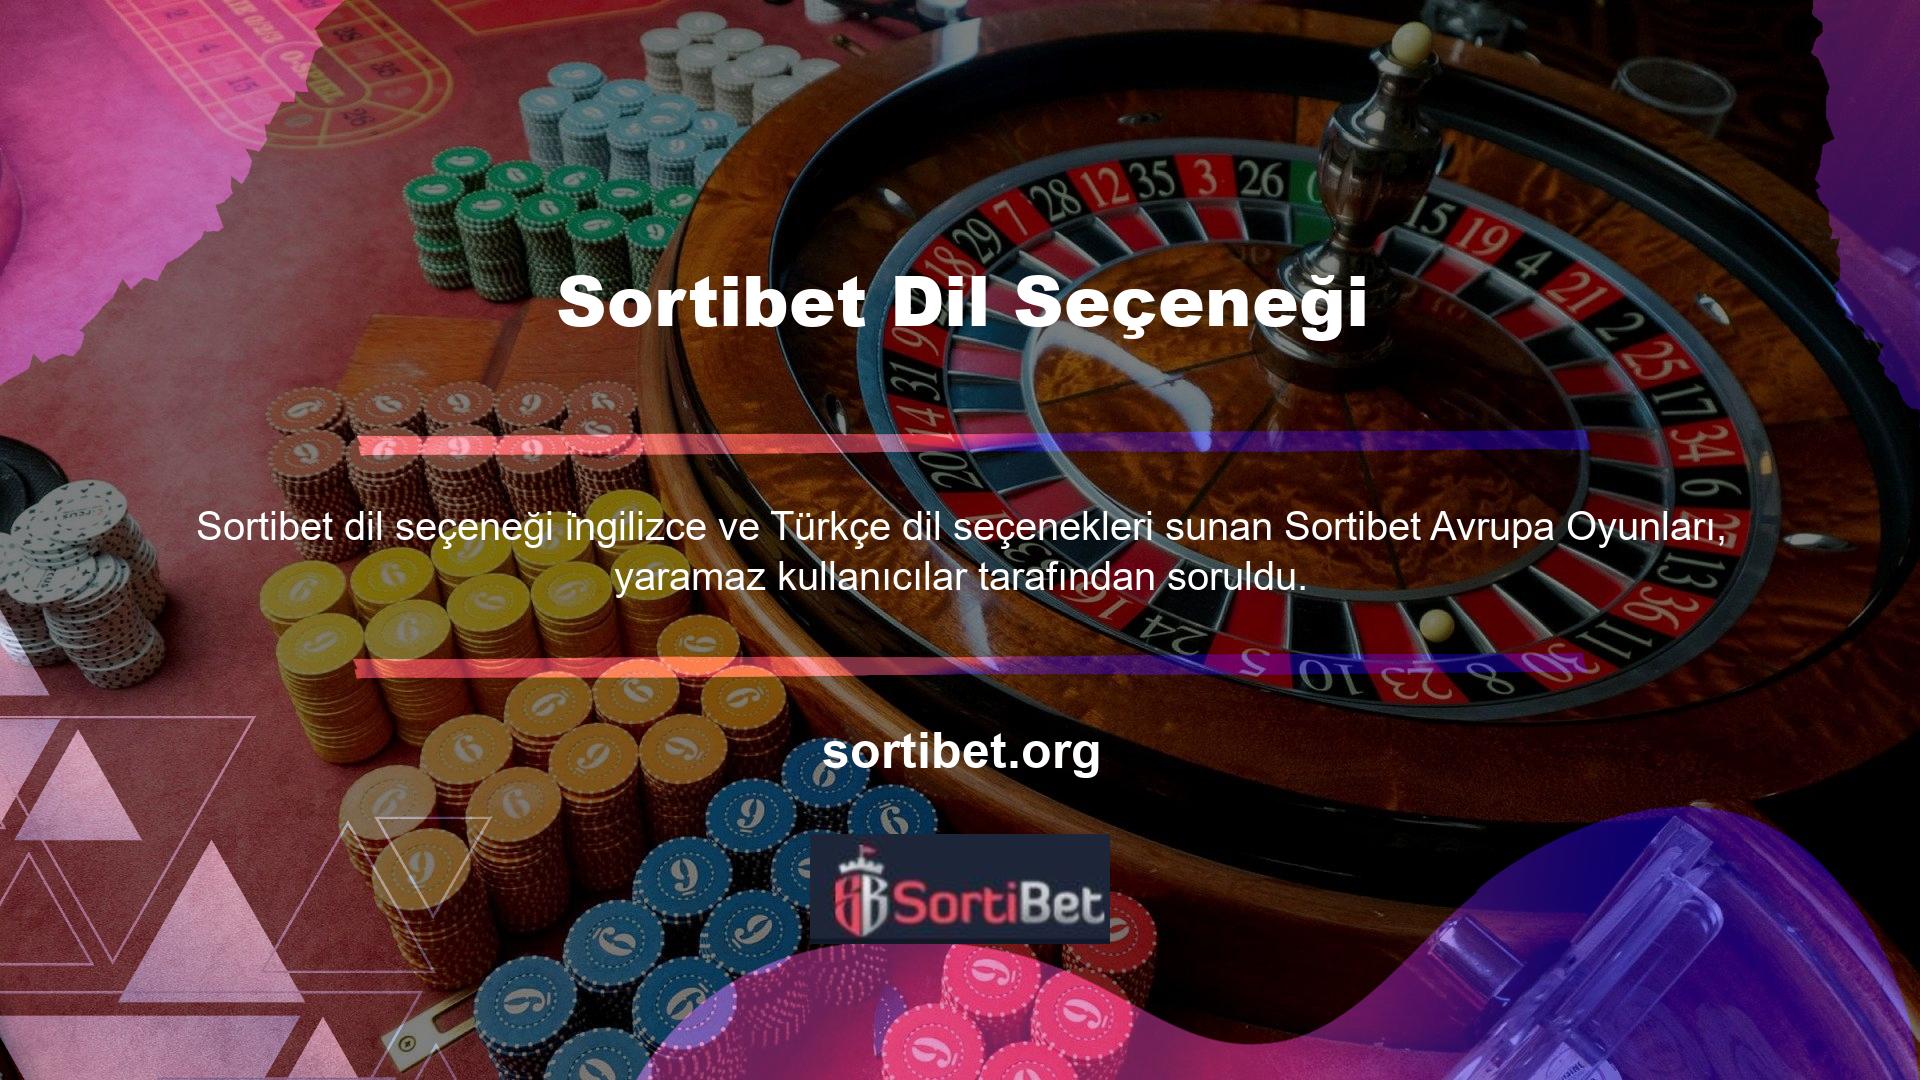 Sortibet sitesi, btk ve tib'in kontrolünde olan Türkiye'deki yasa dışı casino sitelerinden biridir